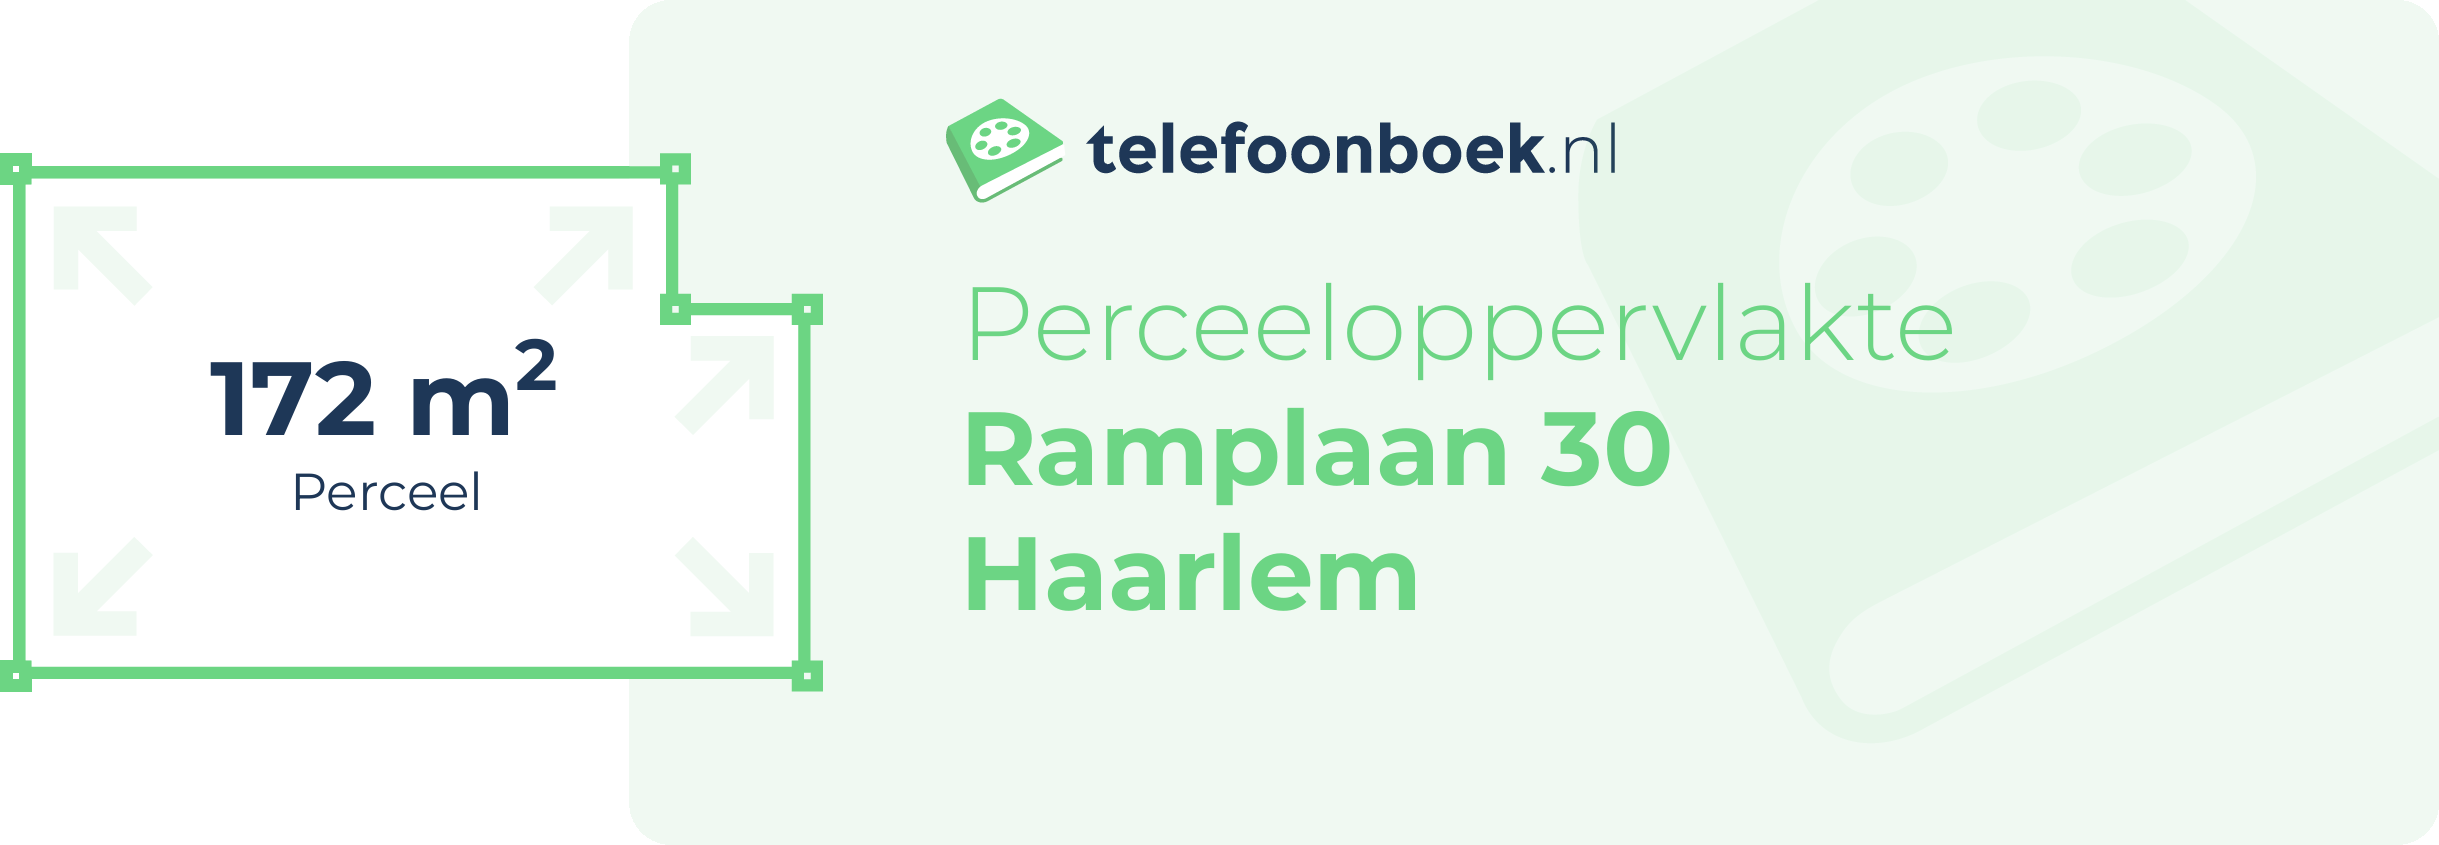 Perceeloppervlakte Ramplaan 30 Haarlem